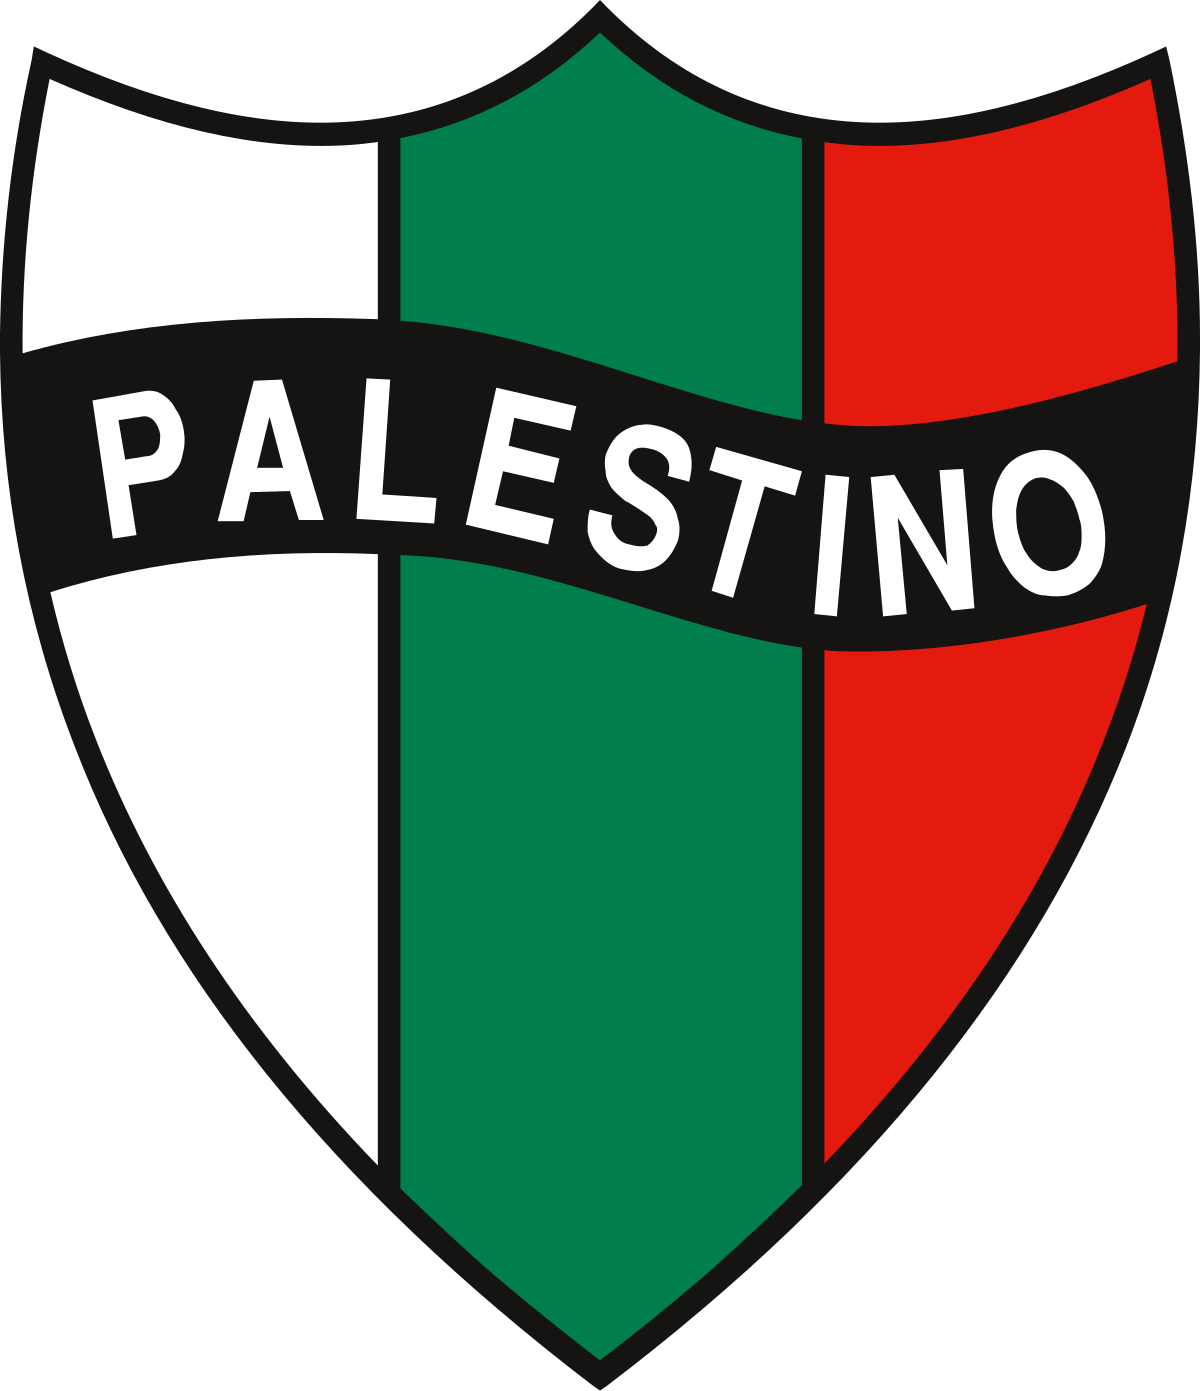 CD Palestino - Wikipedia